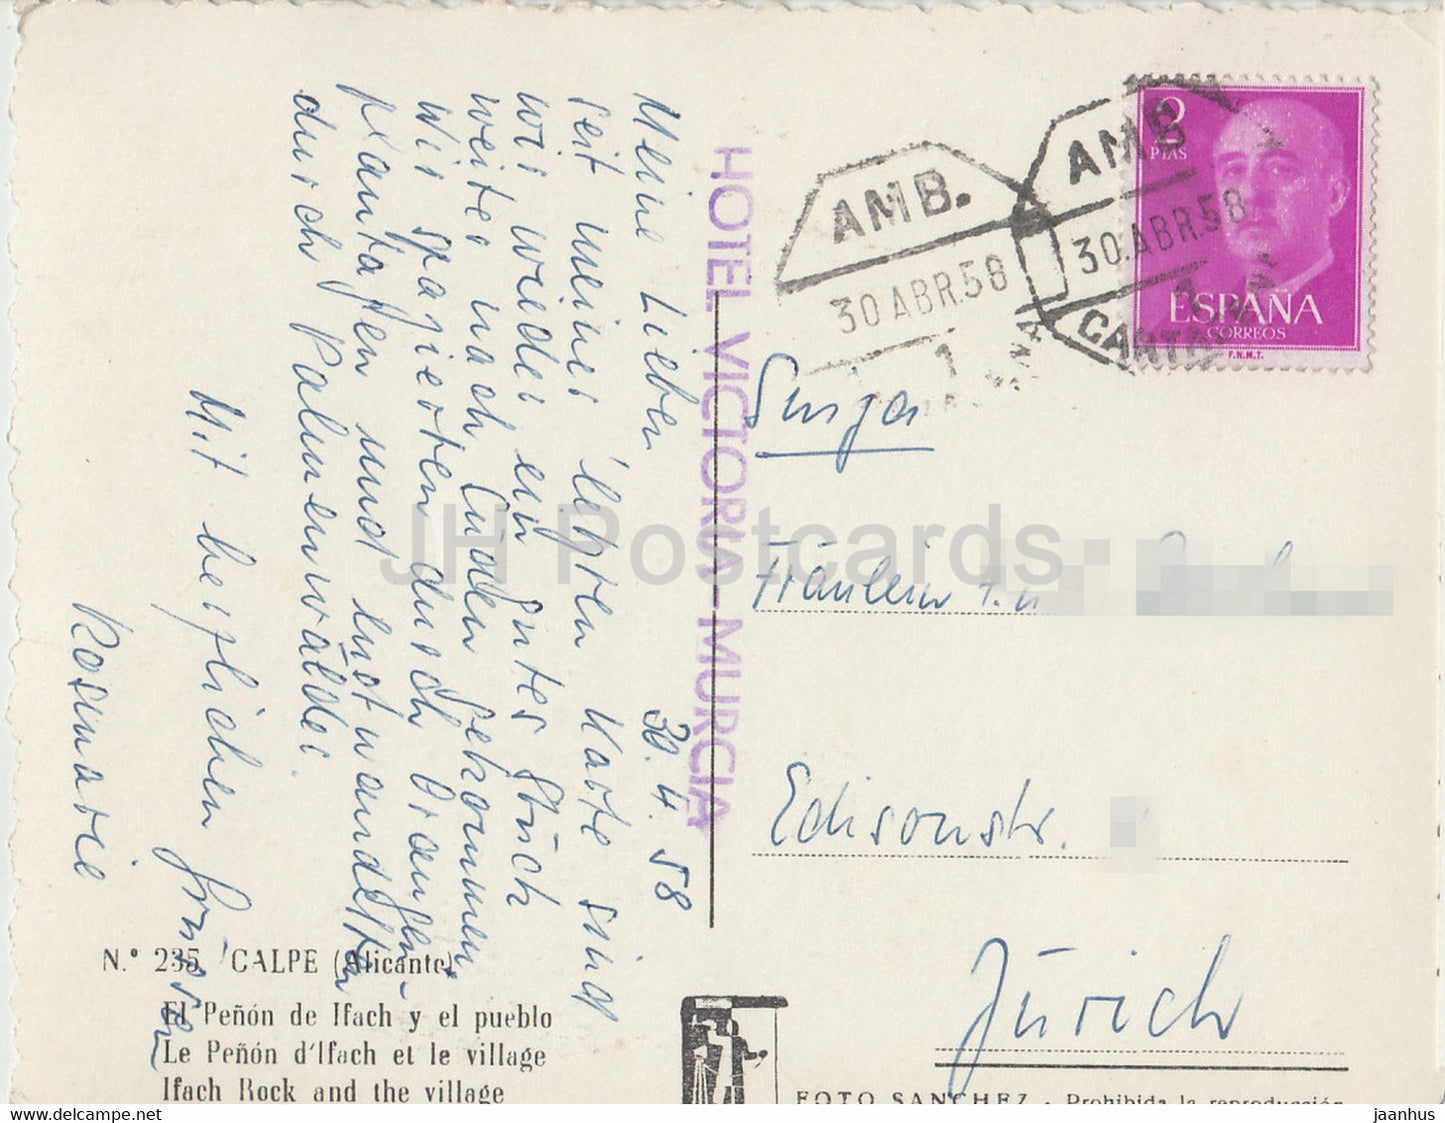 Calpe - El Penon de lfach y el pueblo - Ifach Rock and the Village - old postcard - 1958 - Spain - used